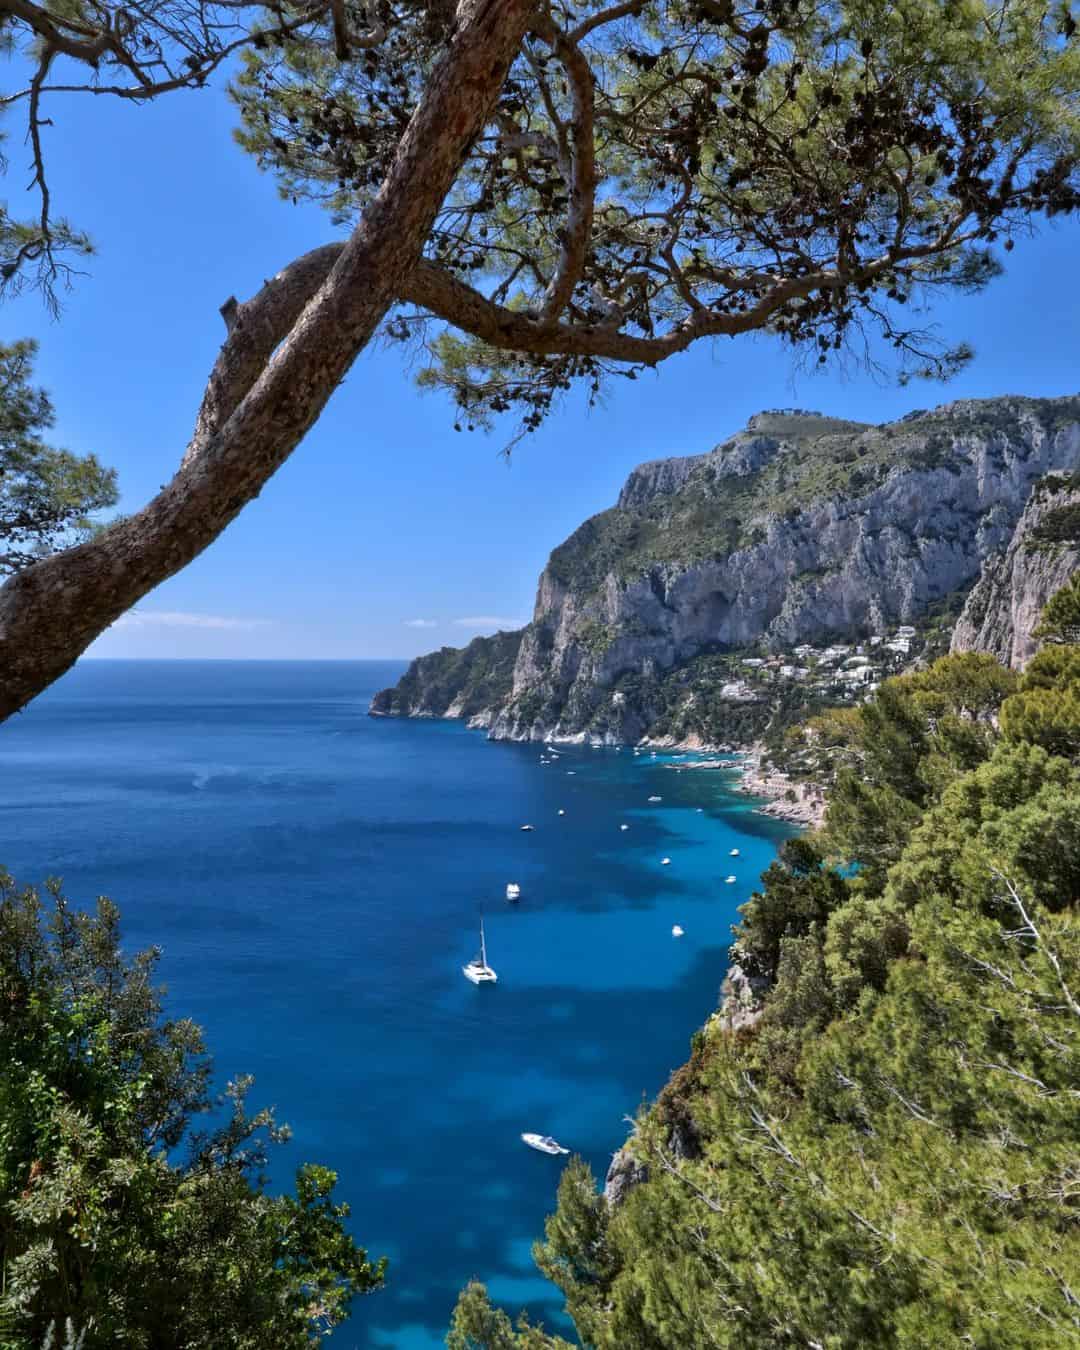 One day in Capri